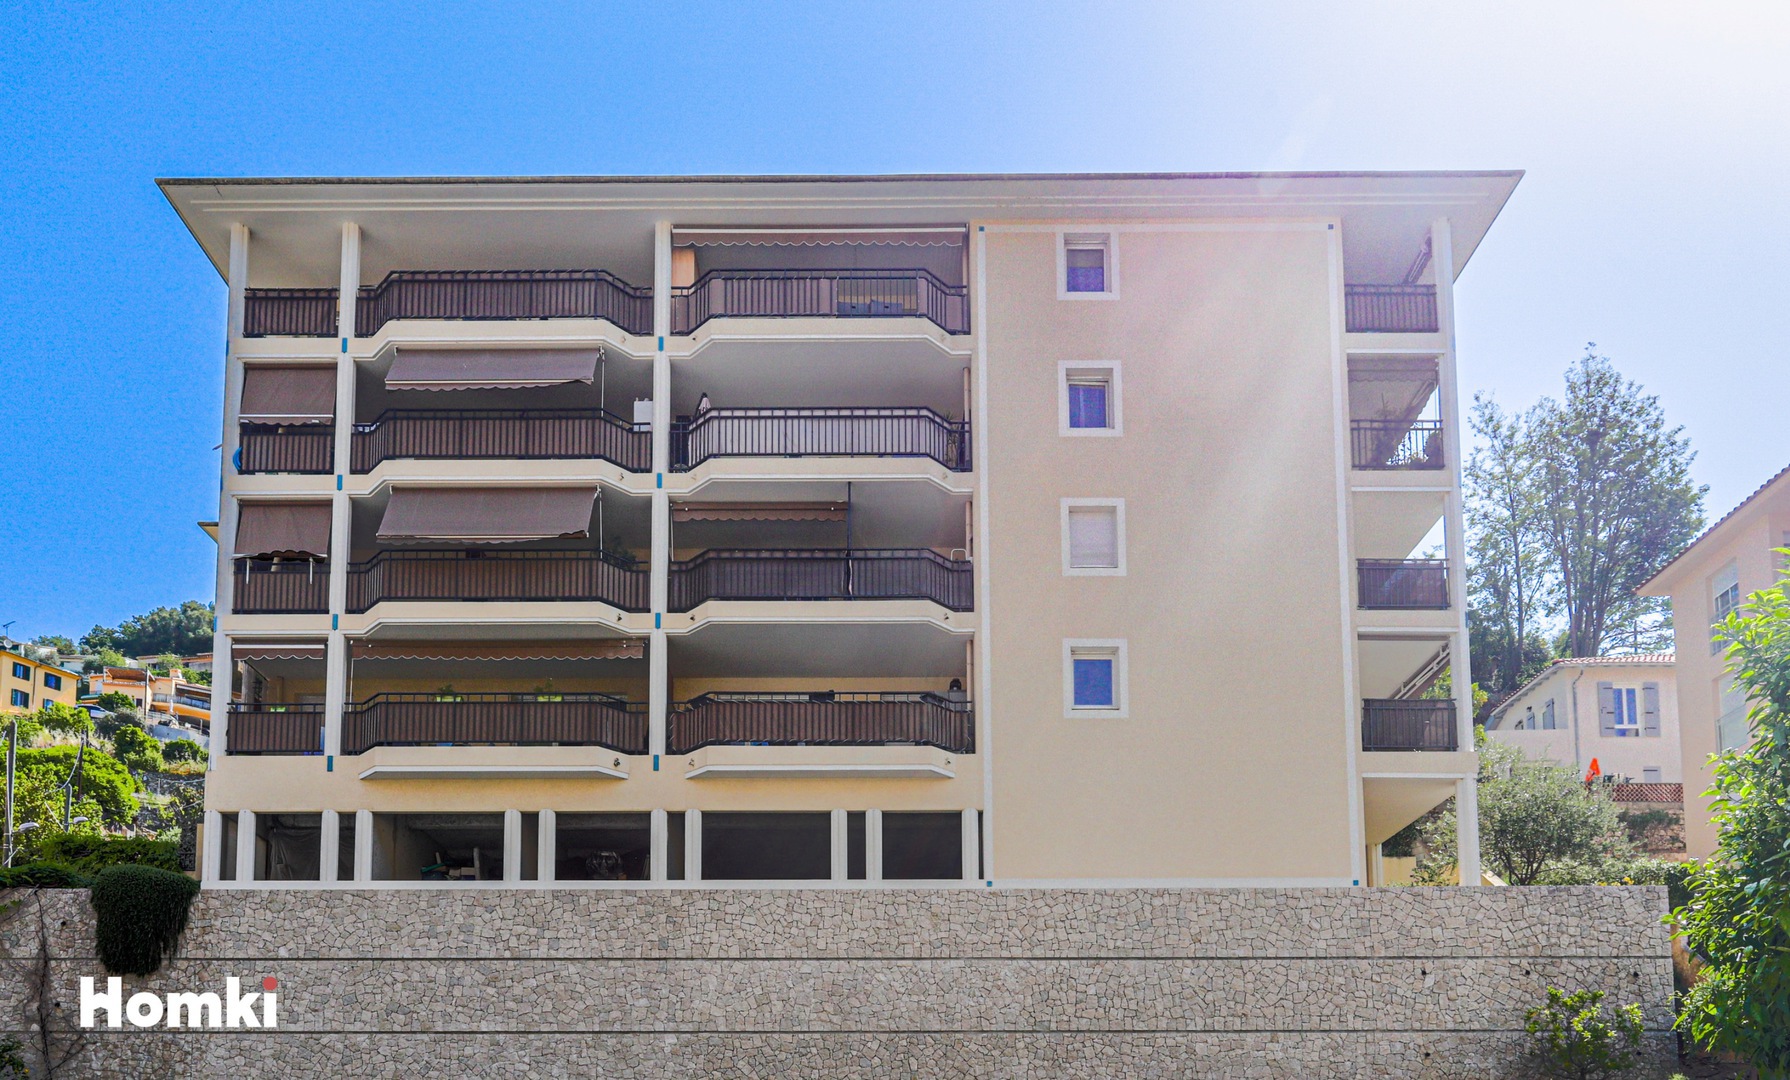 Homki - Vente Appartement  de 38.0 m² à Menton 06500